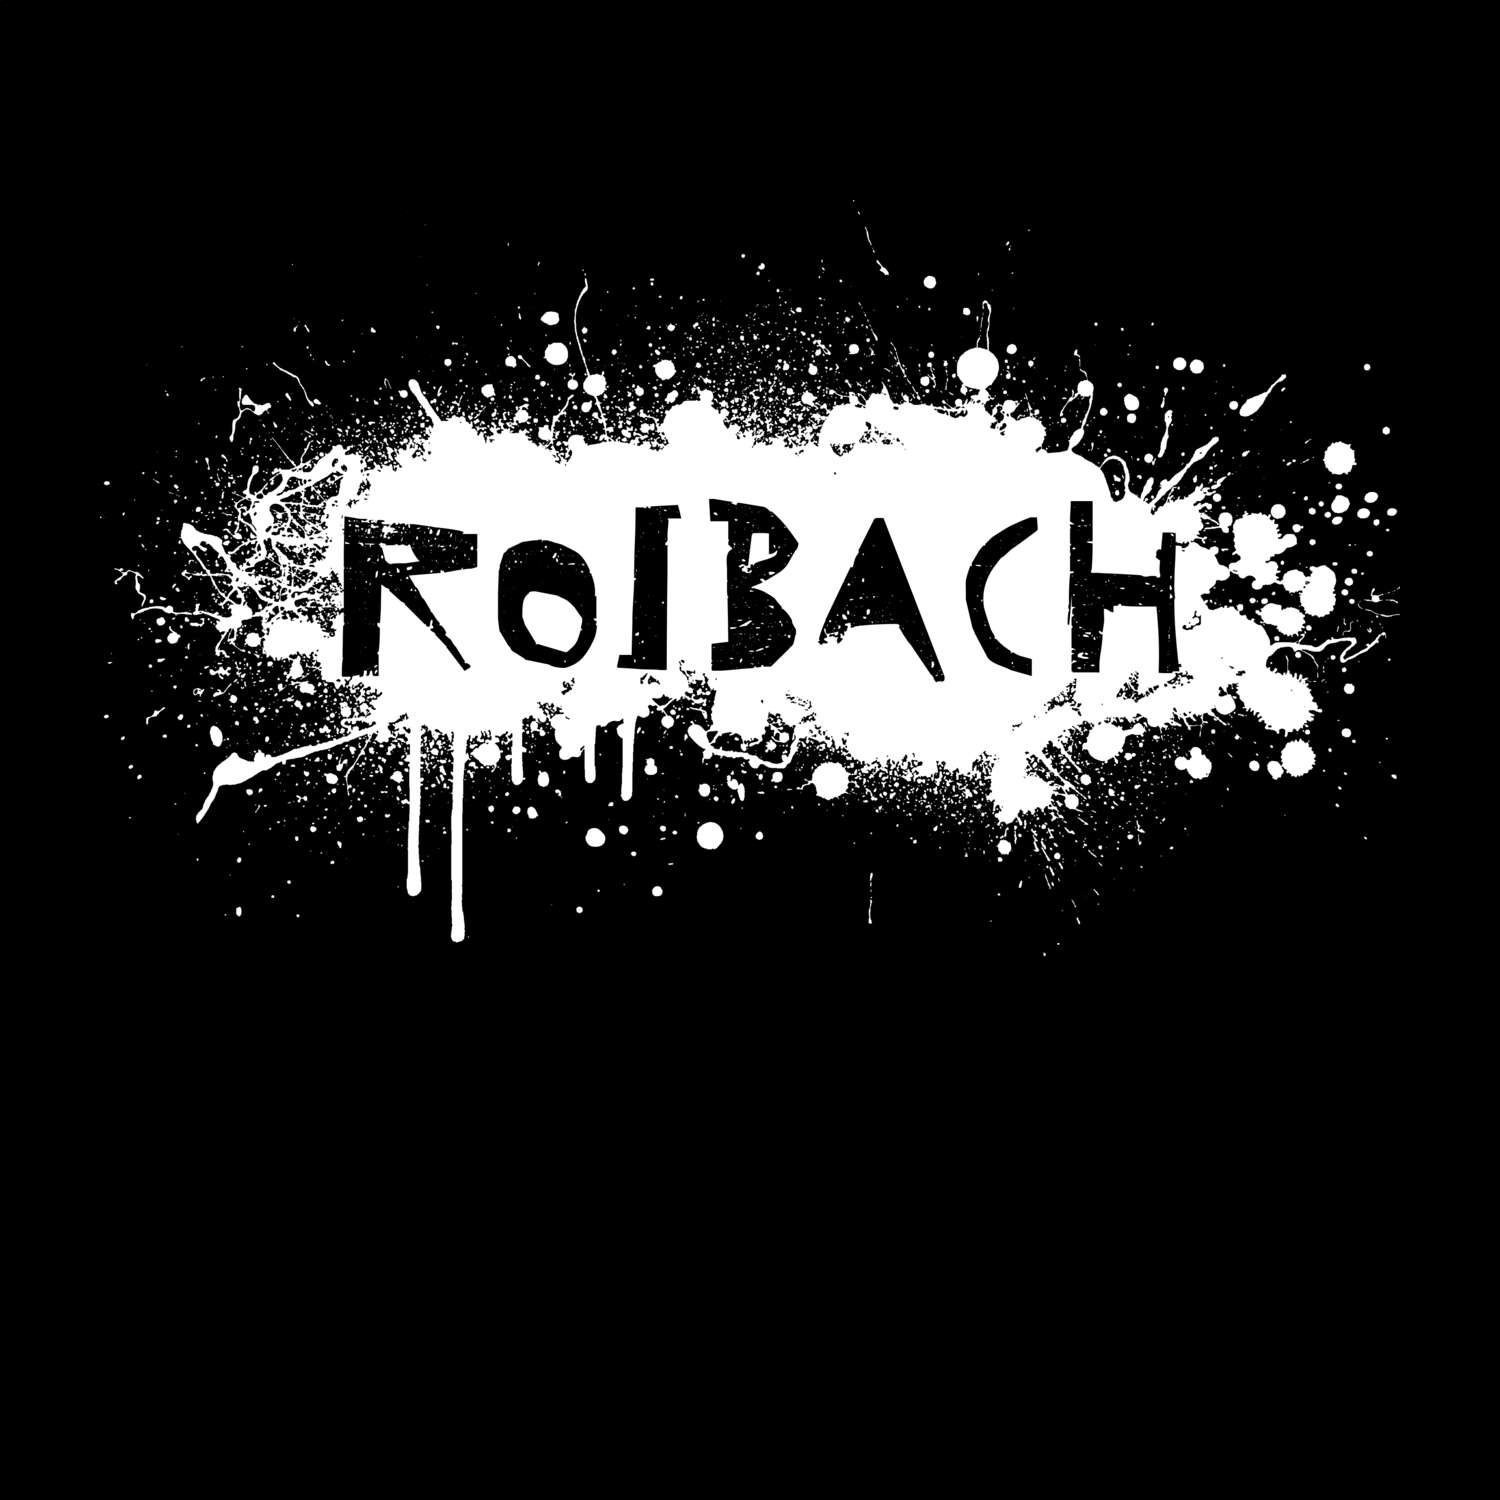 Roibach T-Shirt »Paint Splash Punk«